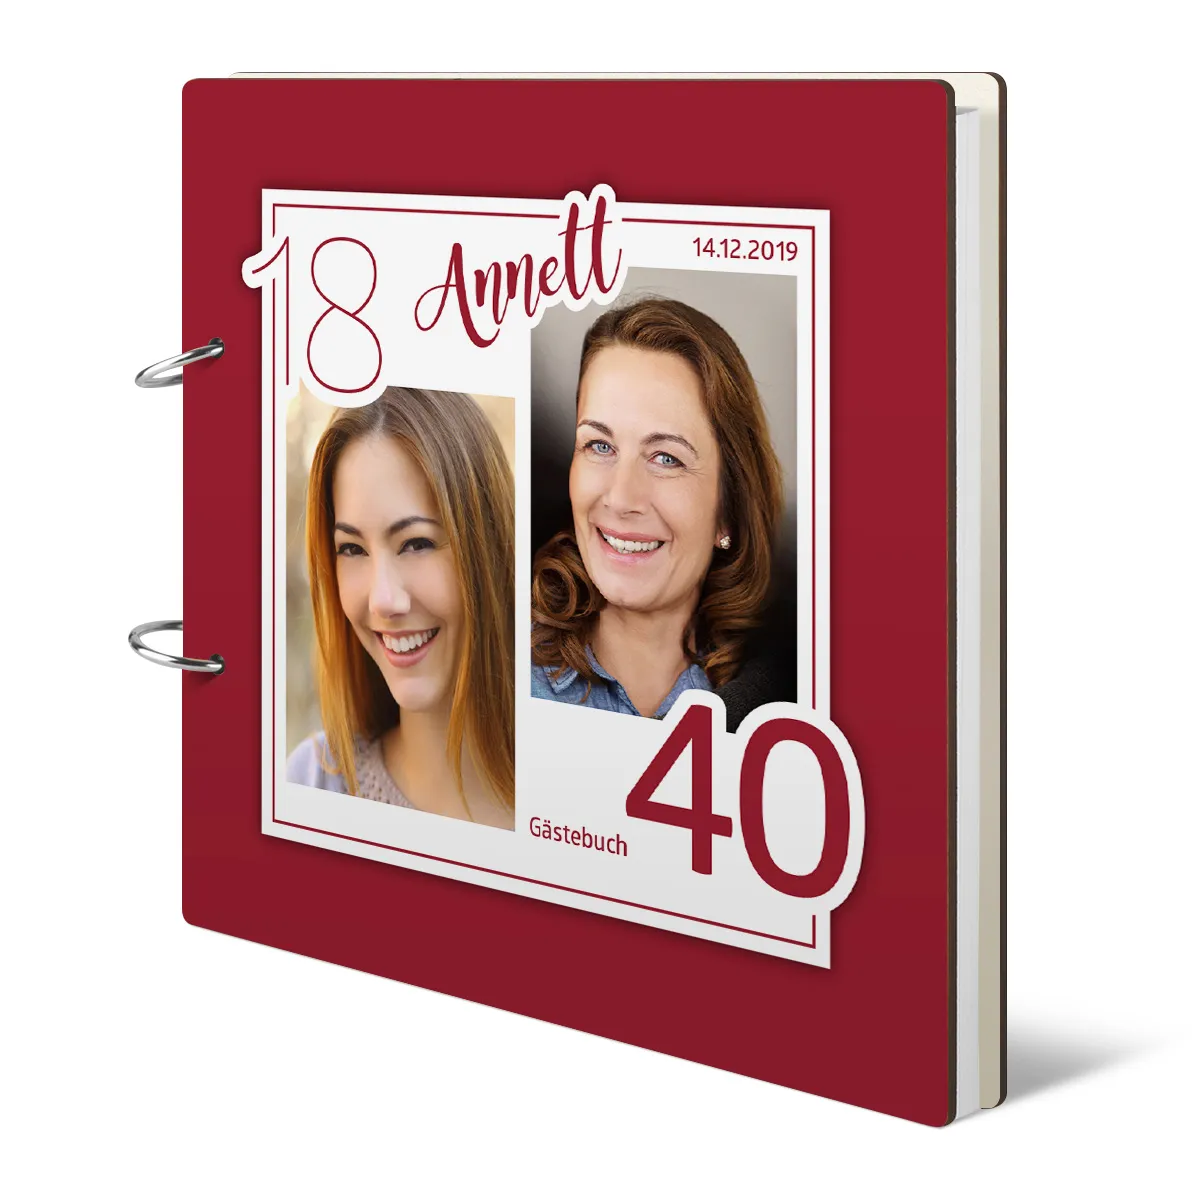 Personalisiertes Geburtstag Gästebuch 40 Jahre - Altersbild